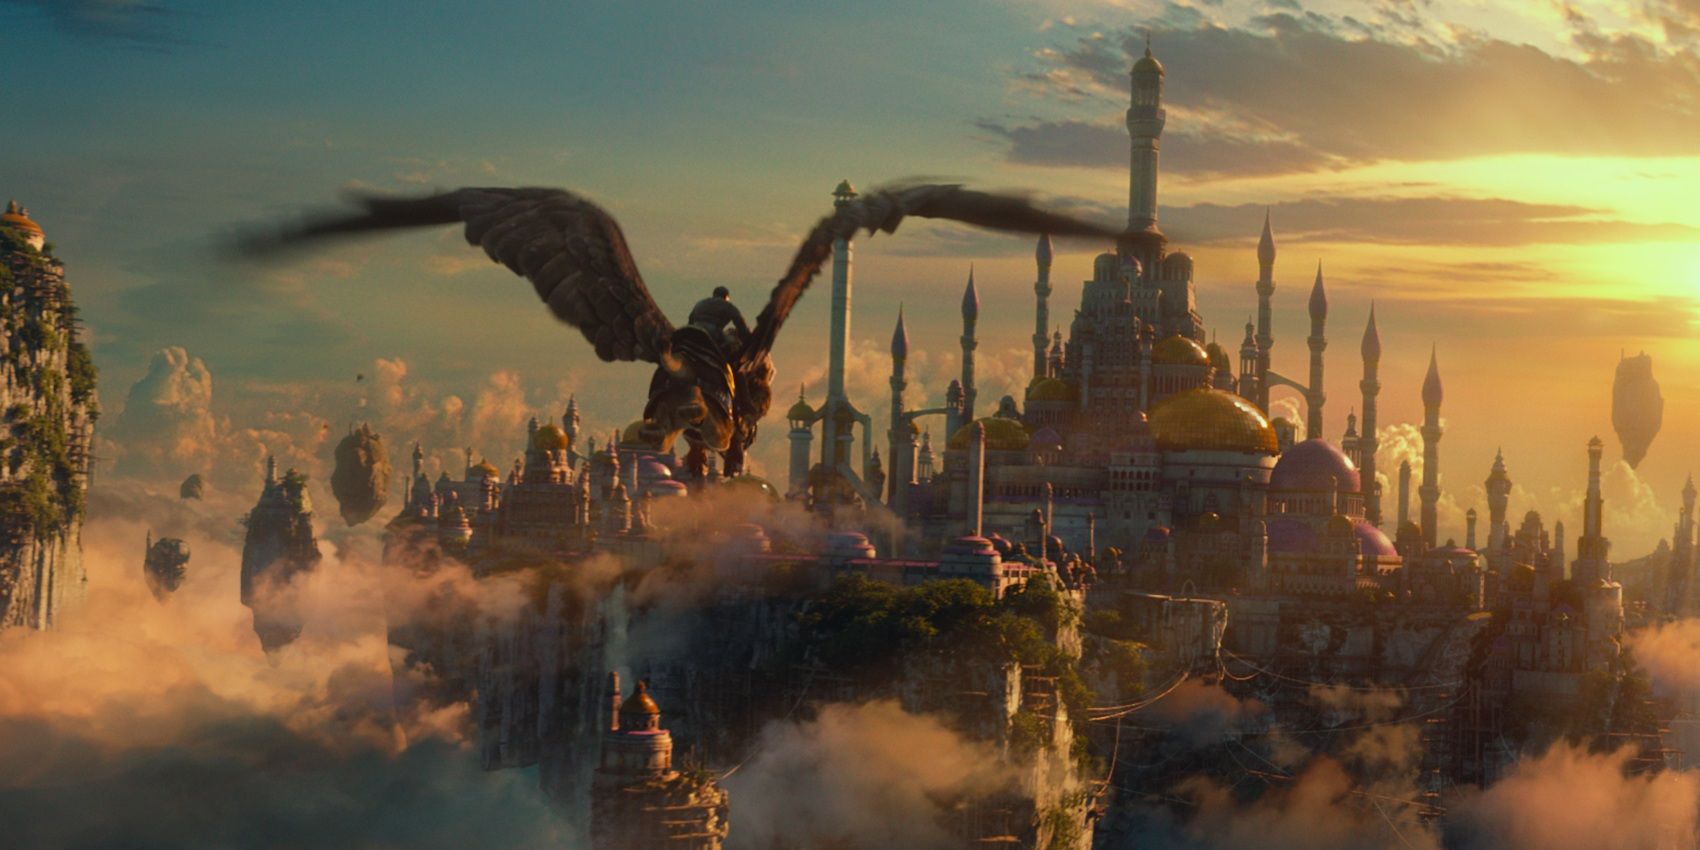 Seekor burung raksasa terbang di atas kerajaan dalam film Warcraft